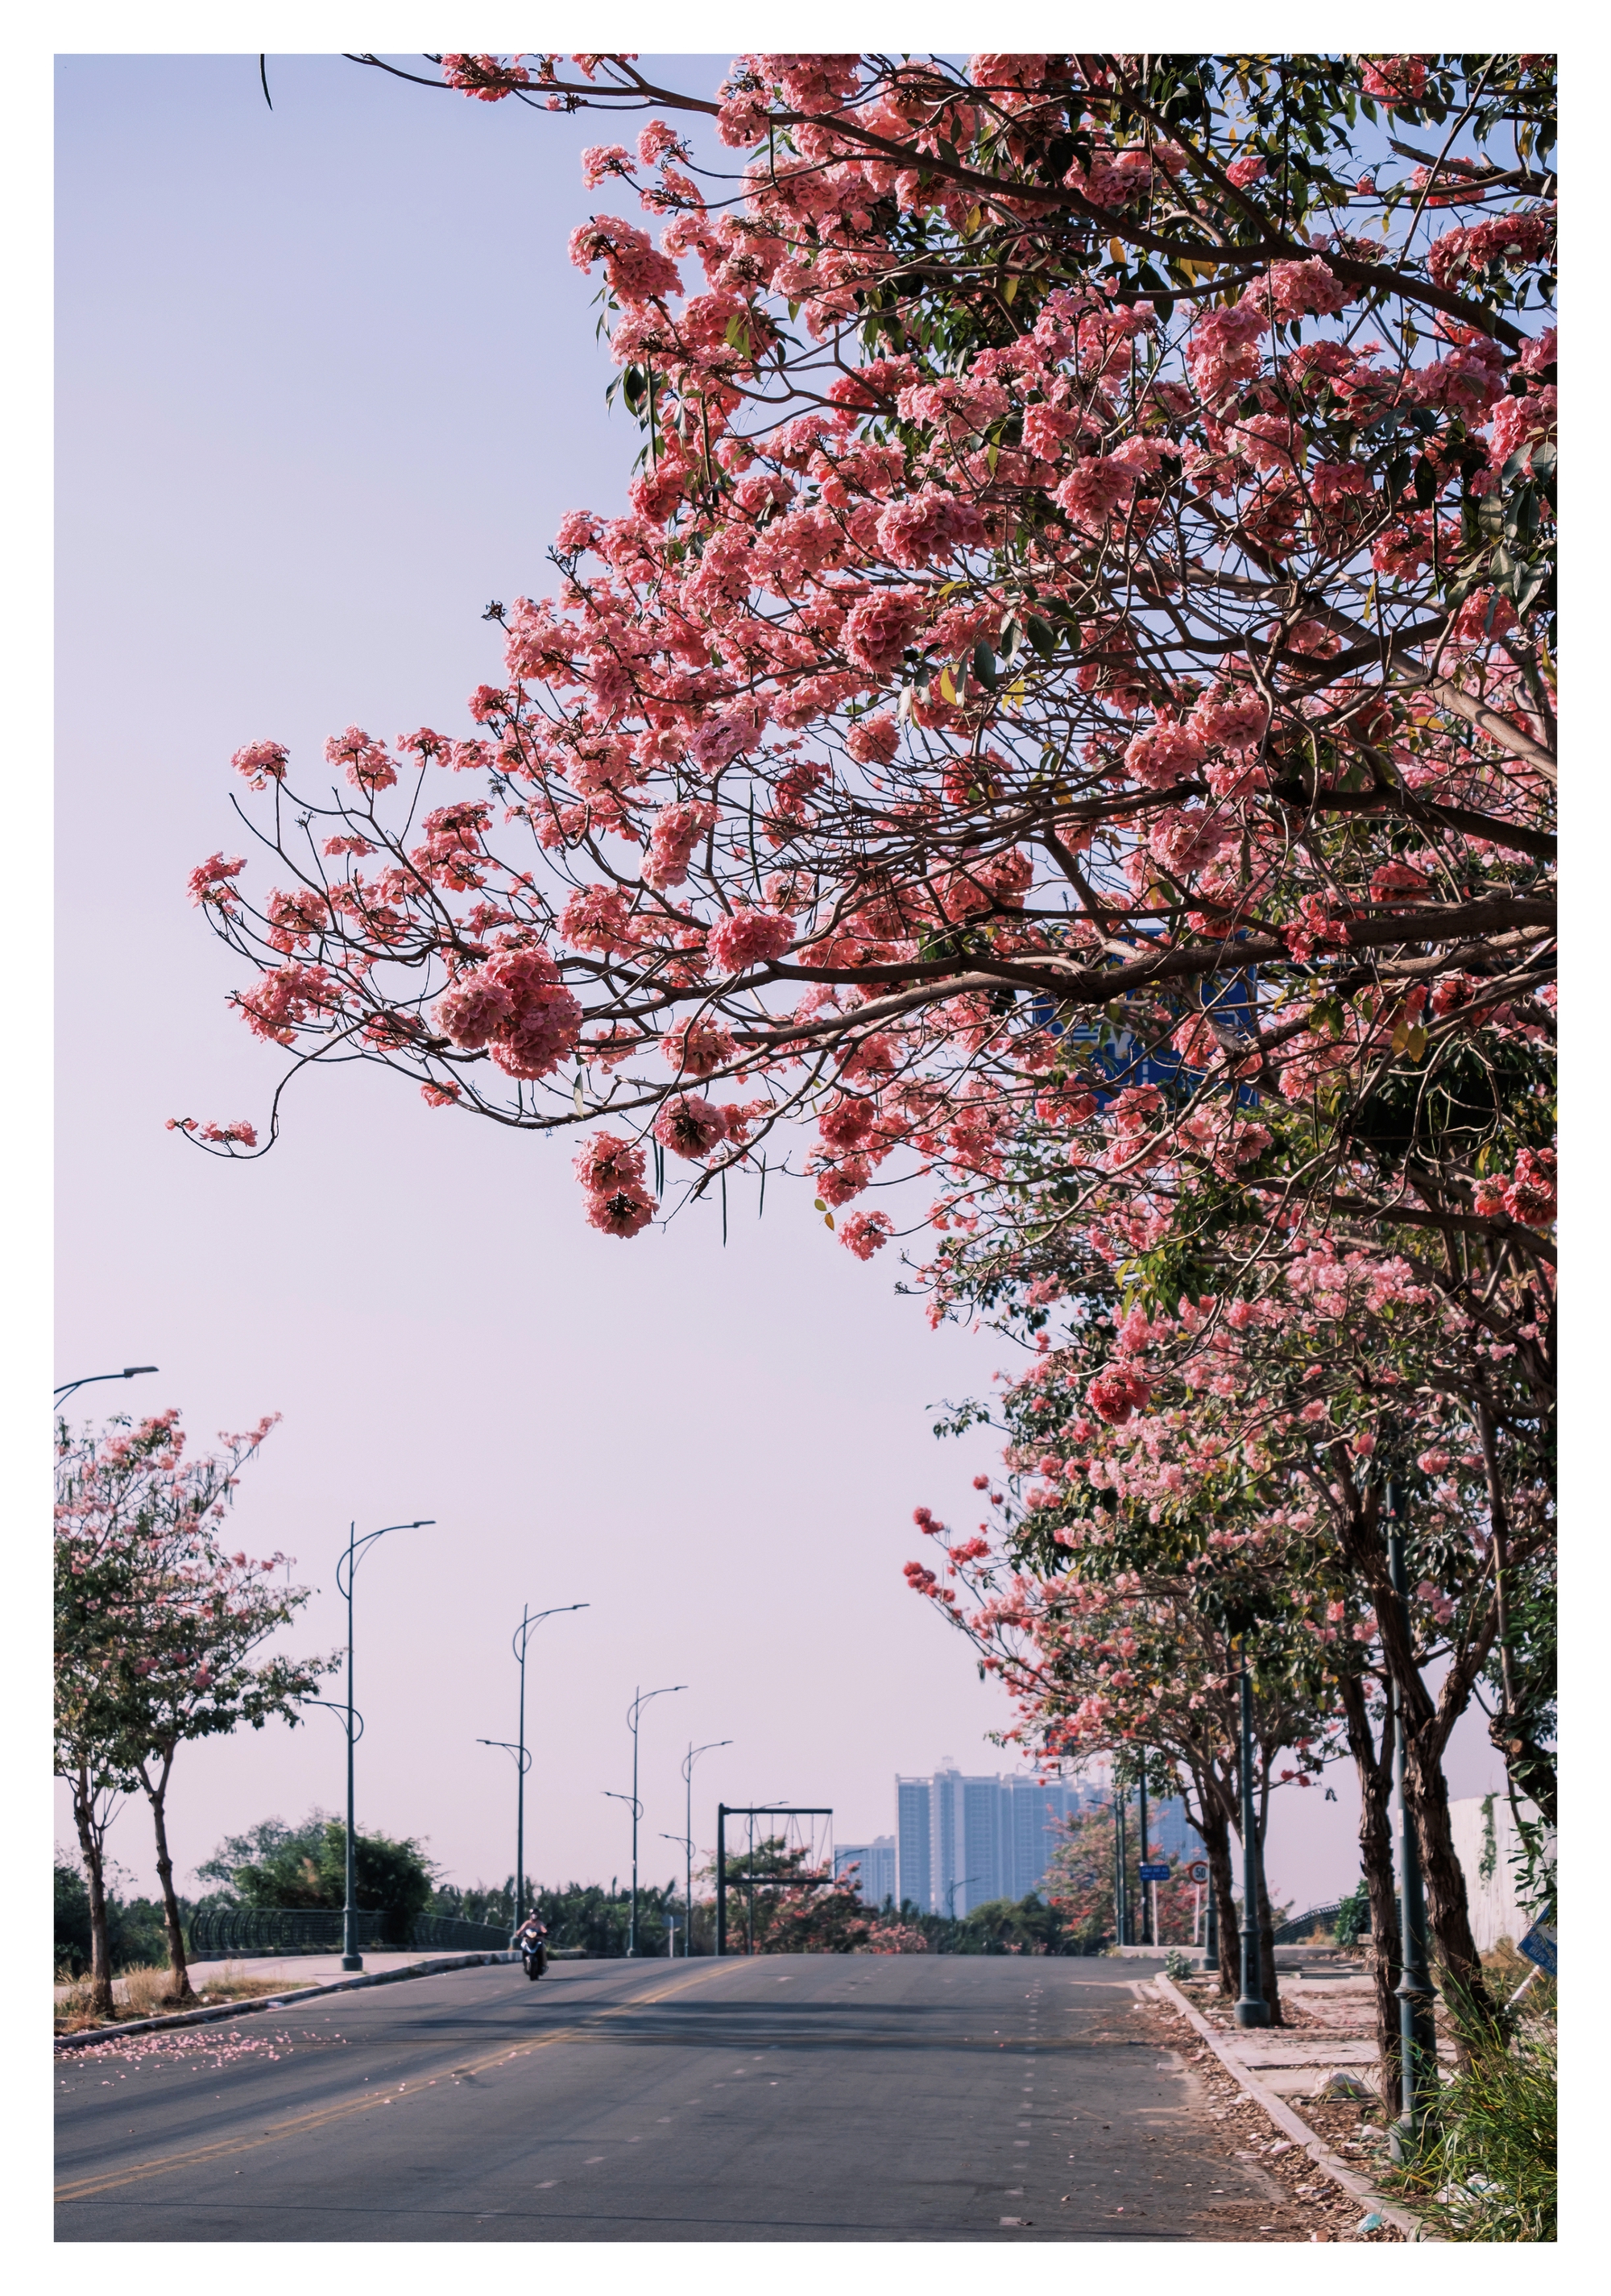 Mùa kèn hồng rợp trời Sài Gòn, chợt thấy thành phố mộng mơ biết bao giữa sắc hoa rực rỡ- Ảnh 13.